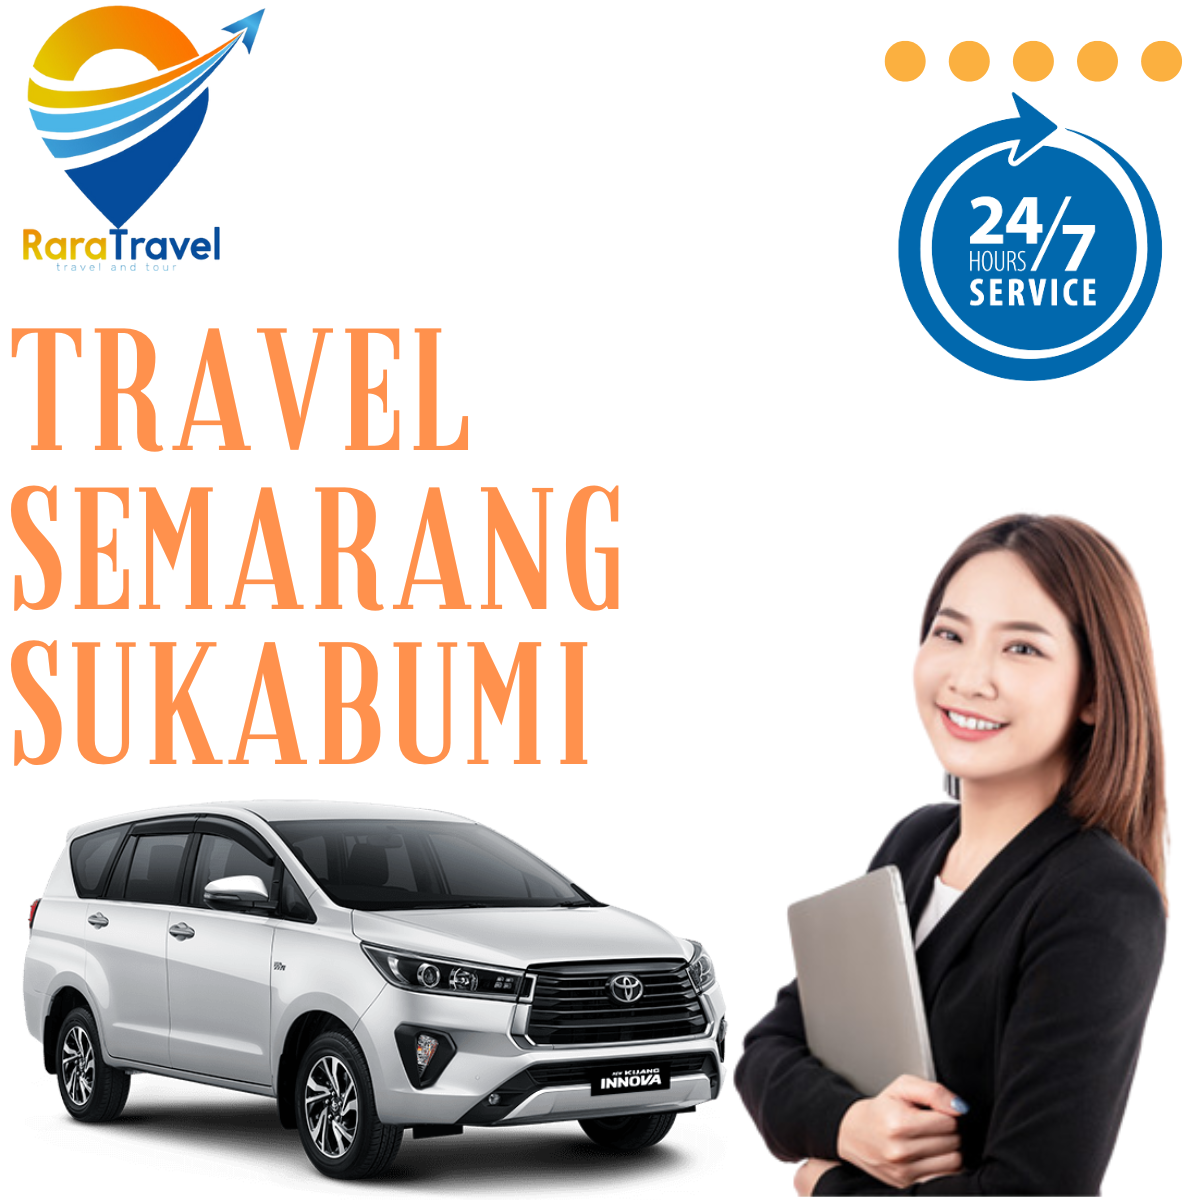 Travel Semarang Sukabumi Hiace PP Murah - RARATRAVEL.ID